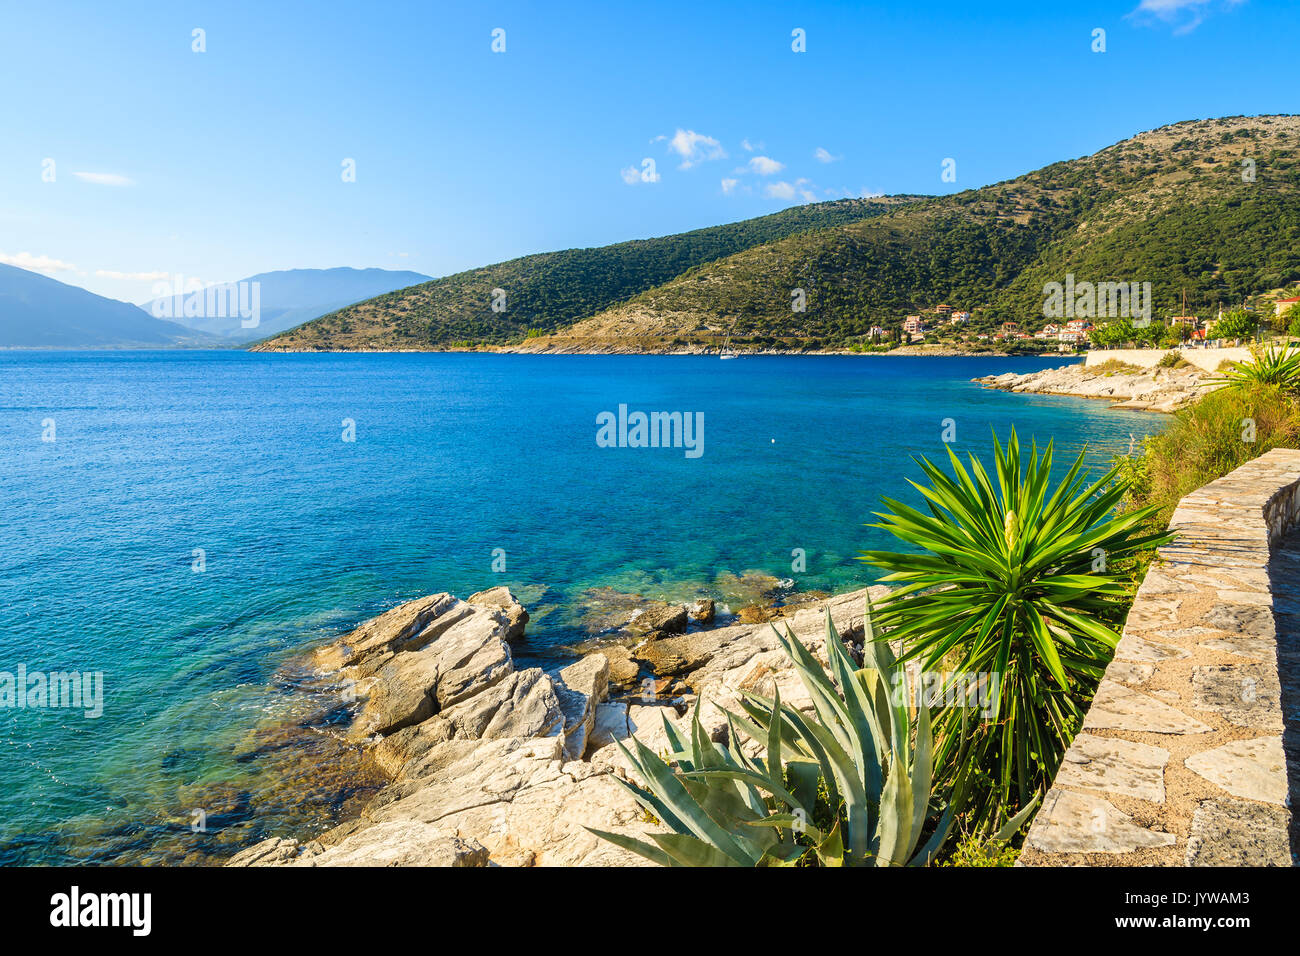 Sentier du littoral avec agave plantes le long de la mer village Agia Efimia, l'île de Céphalonie, Grèce Banque D'Images